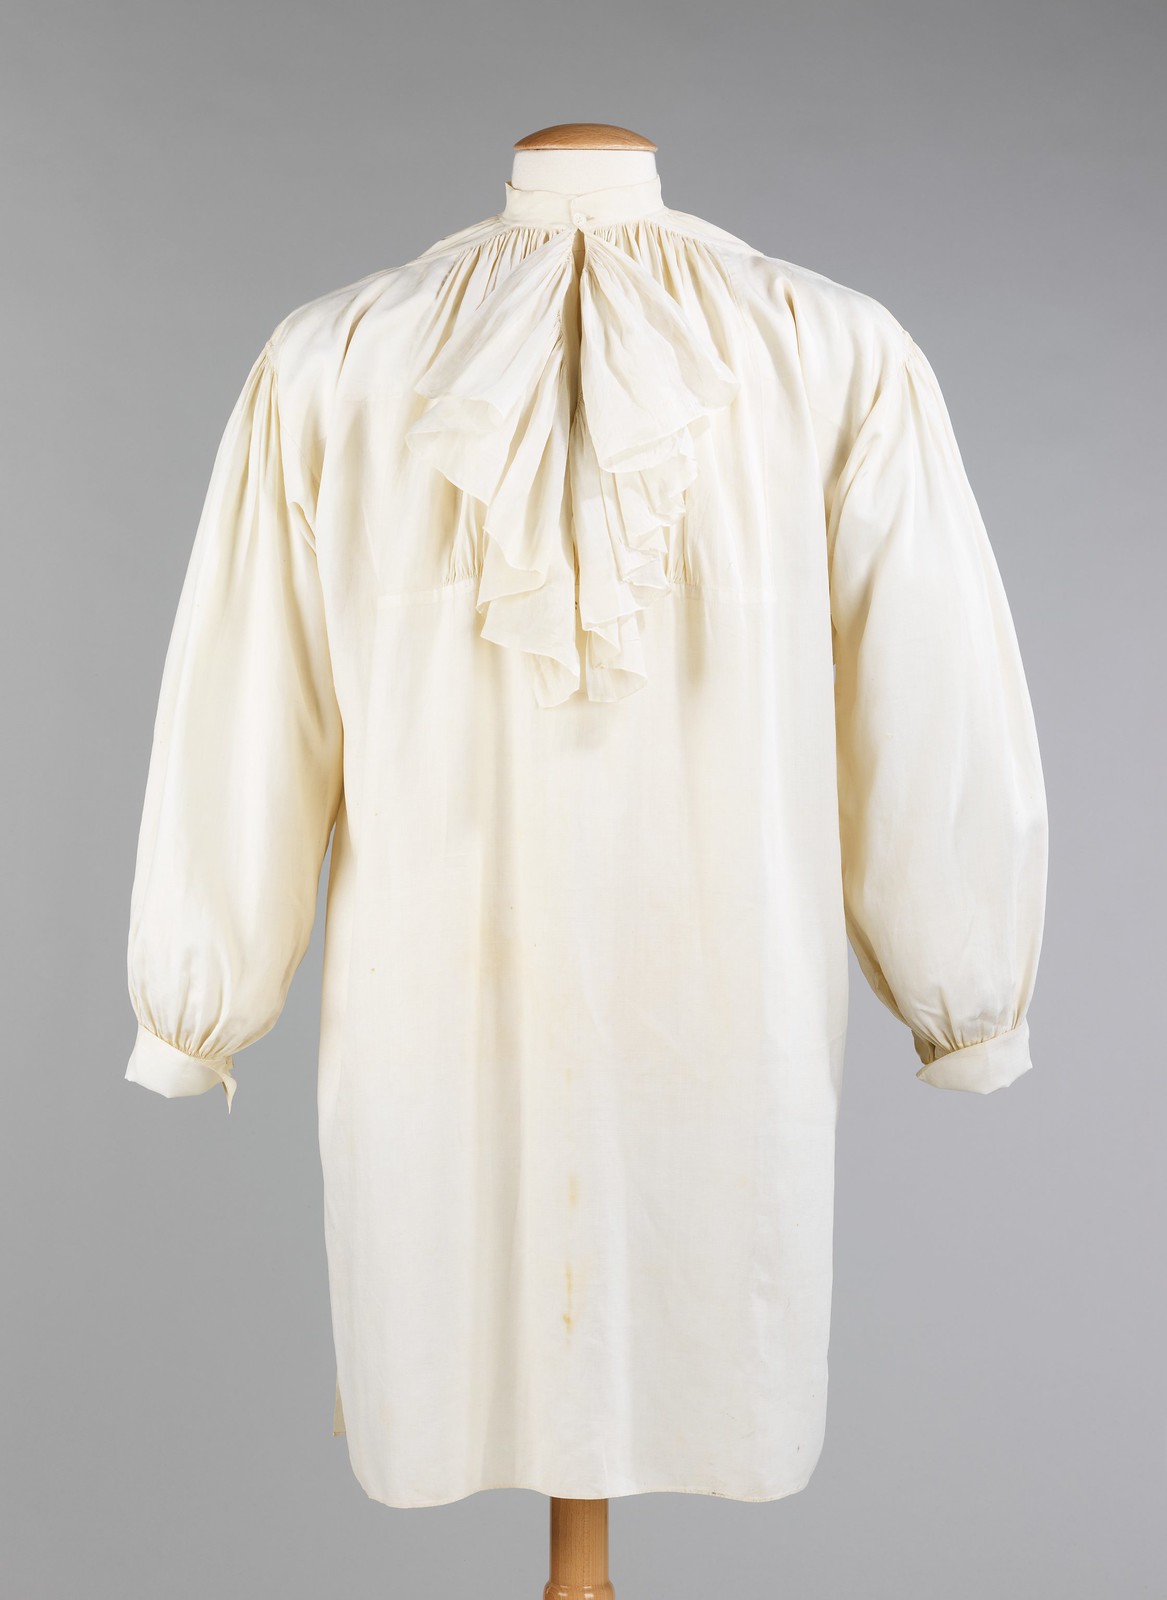 1780. Shirt. French. Linen. metmuseum